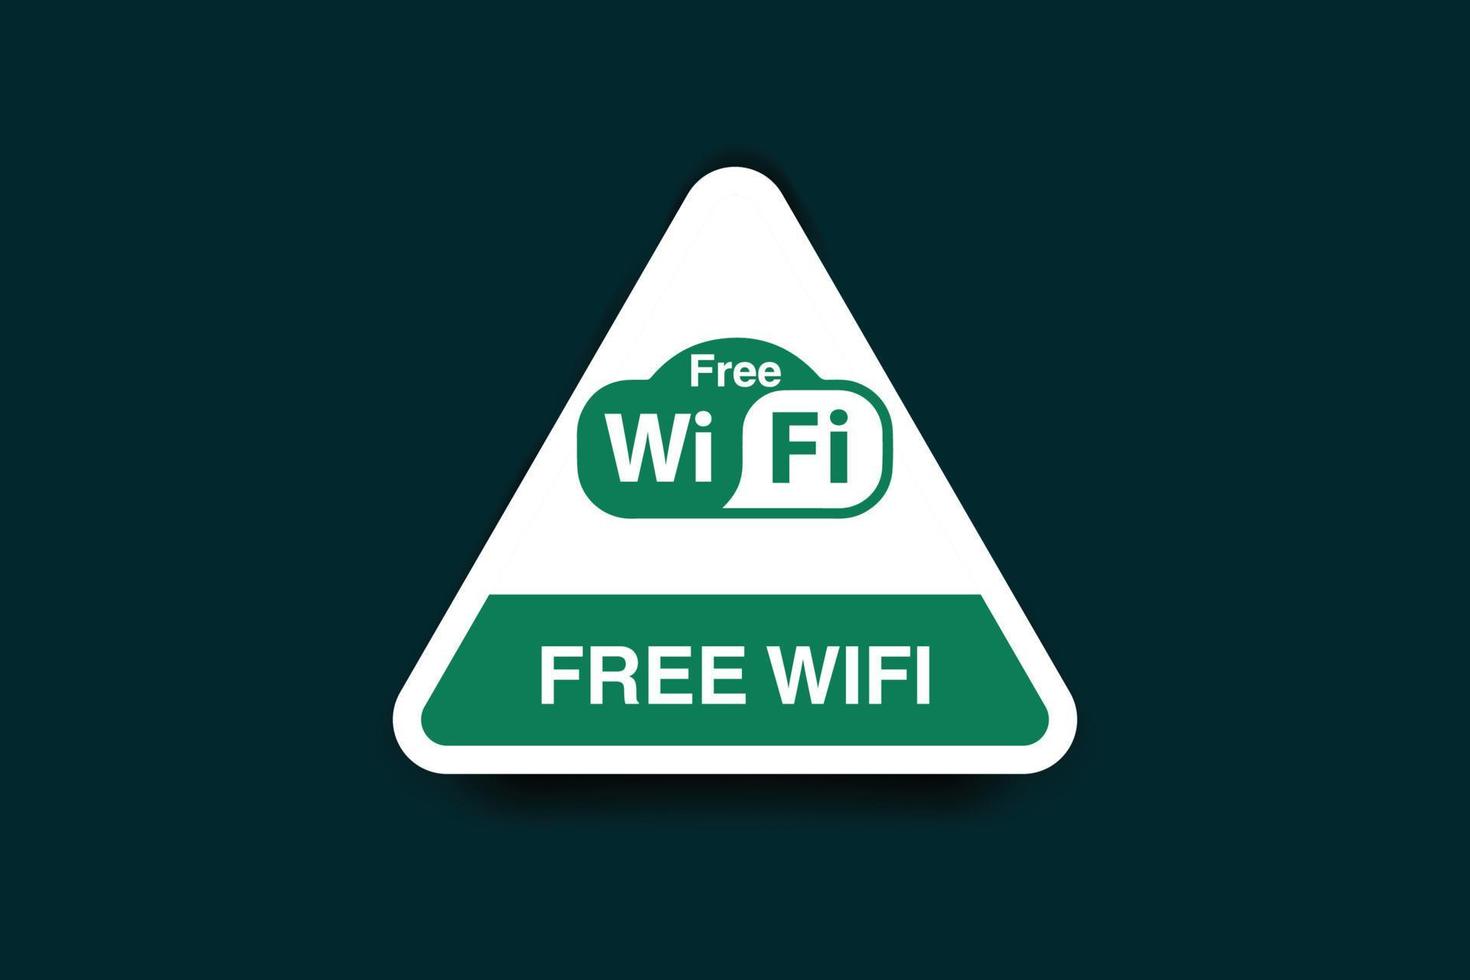 Free wifi icon and green color unique design vector